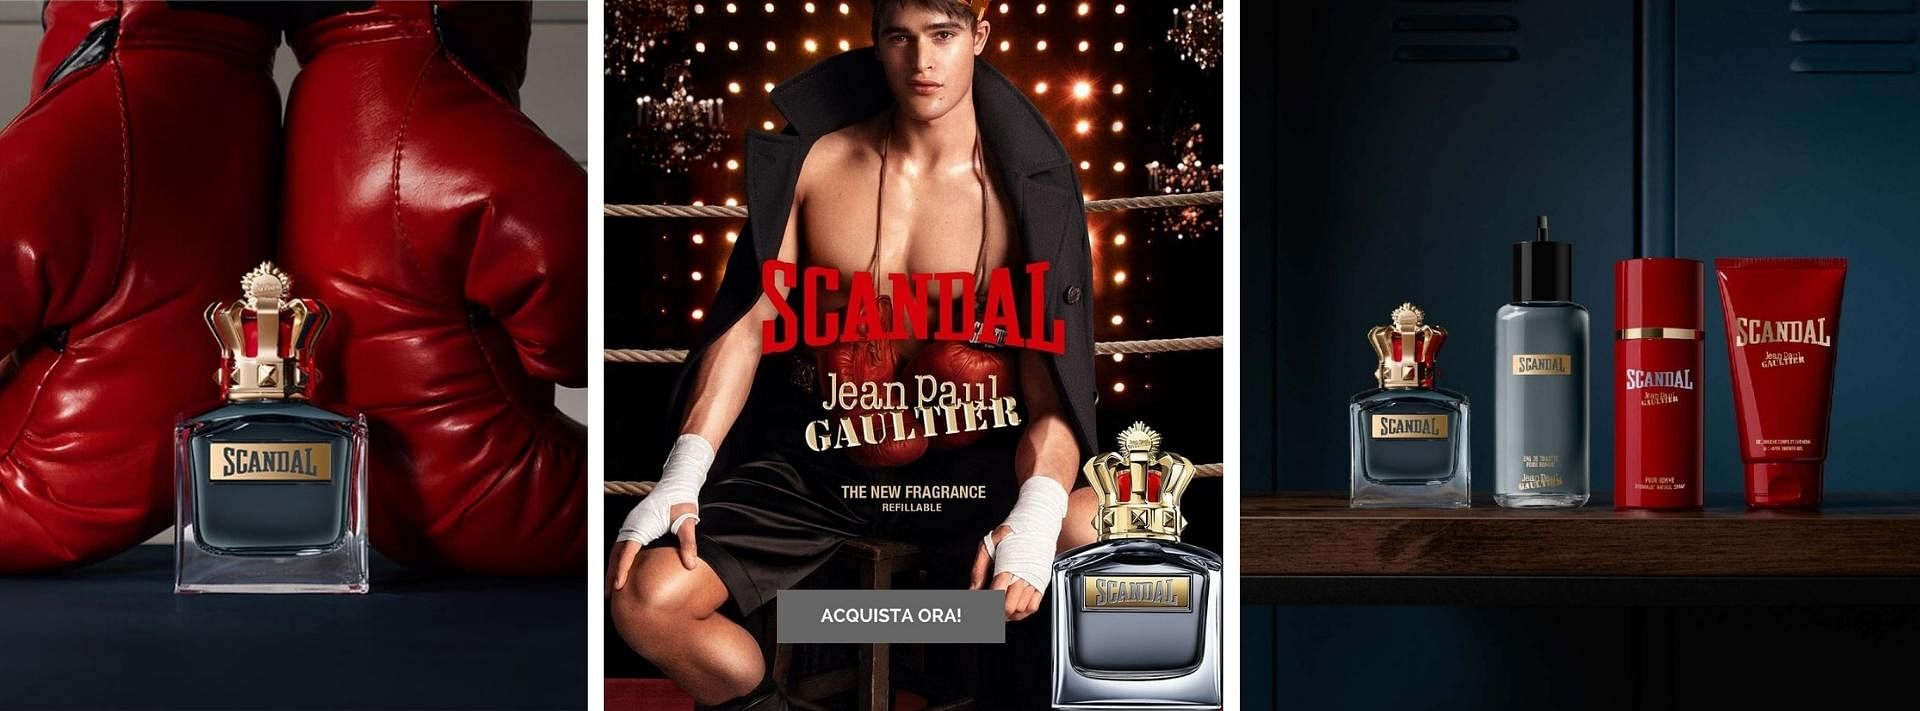 Scopri La nuova fragranza da uomo di Jean Paul Gaultier